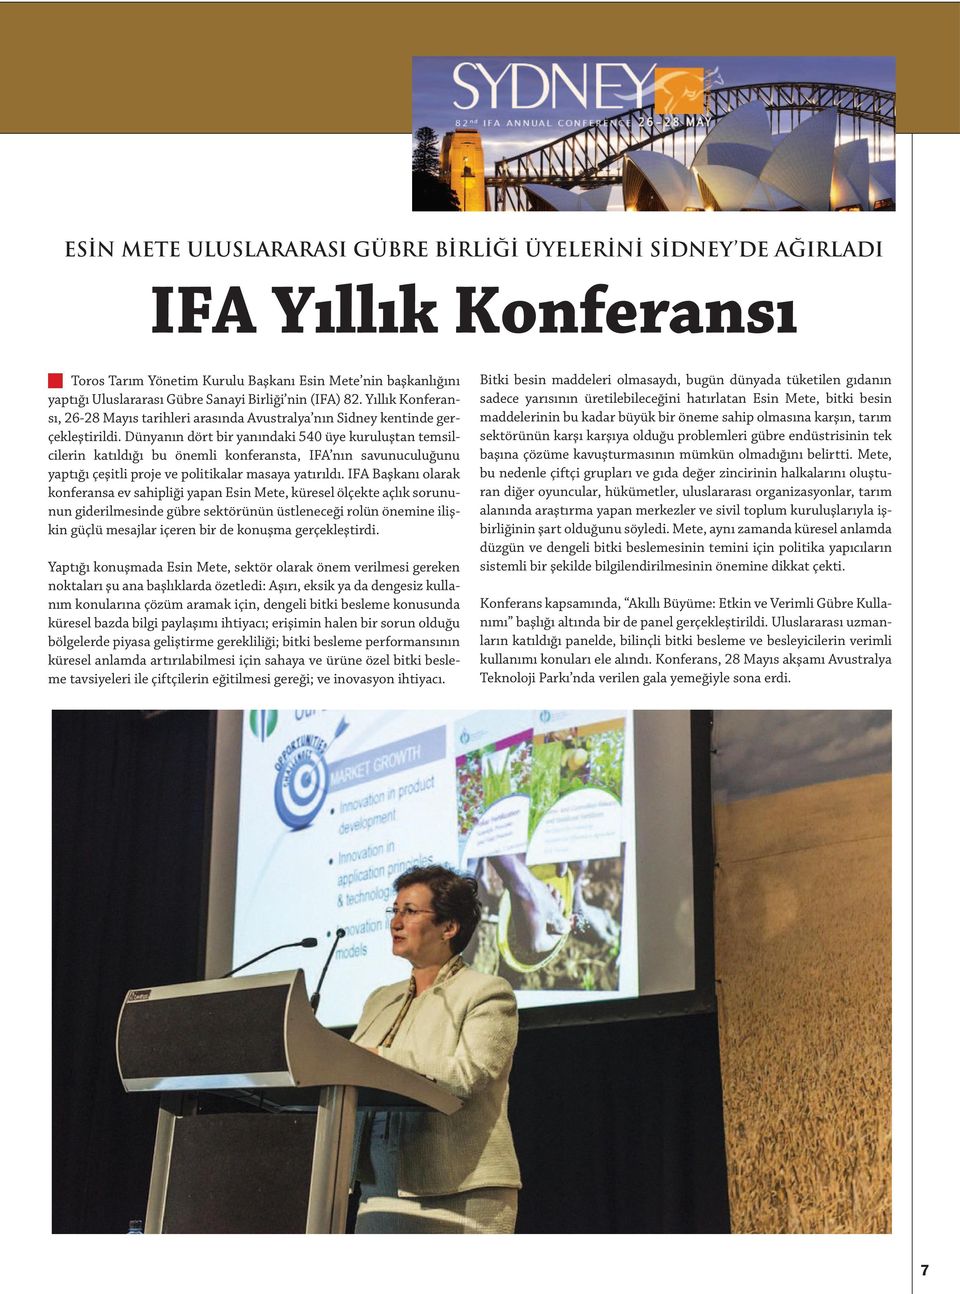 Dünyanın dört bir yanındaki 540 üye kuruluştan temsilcilerin katıldığı bu önemli konferansta, IFA nın savunuculuğunu yaptığı çeşitli proje ve politikalar masaya yatırıldı.